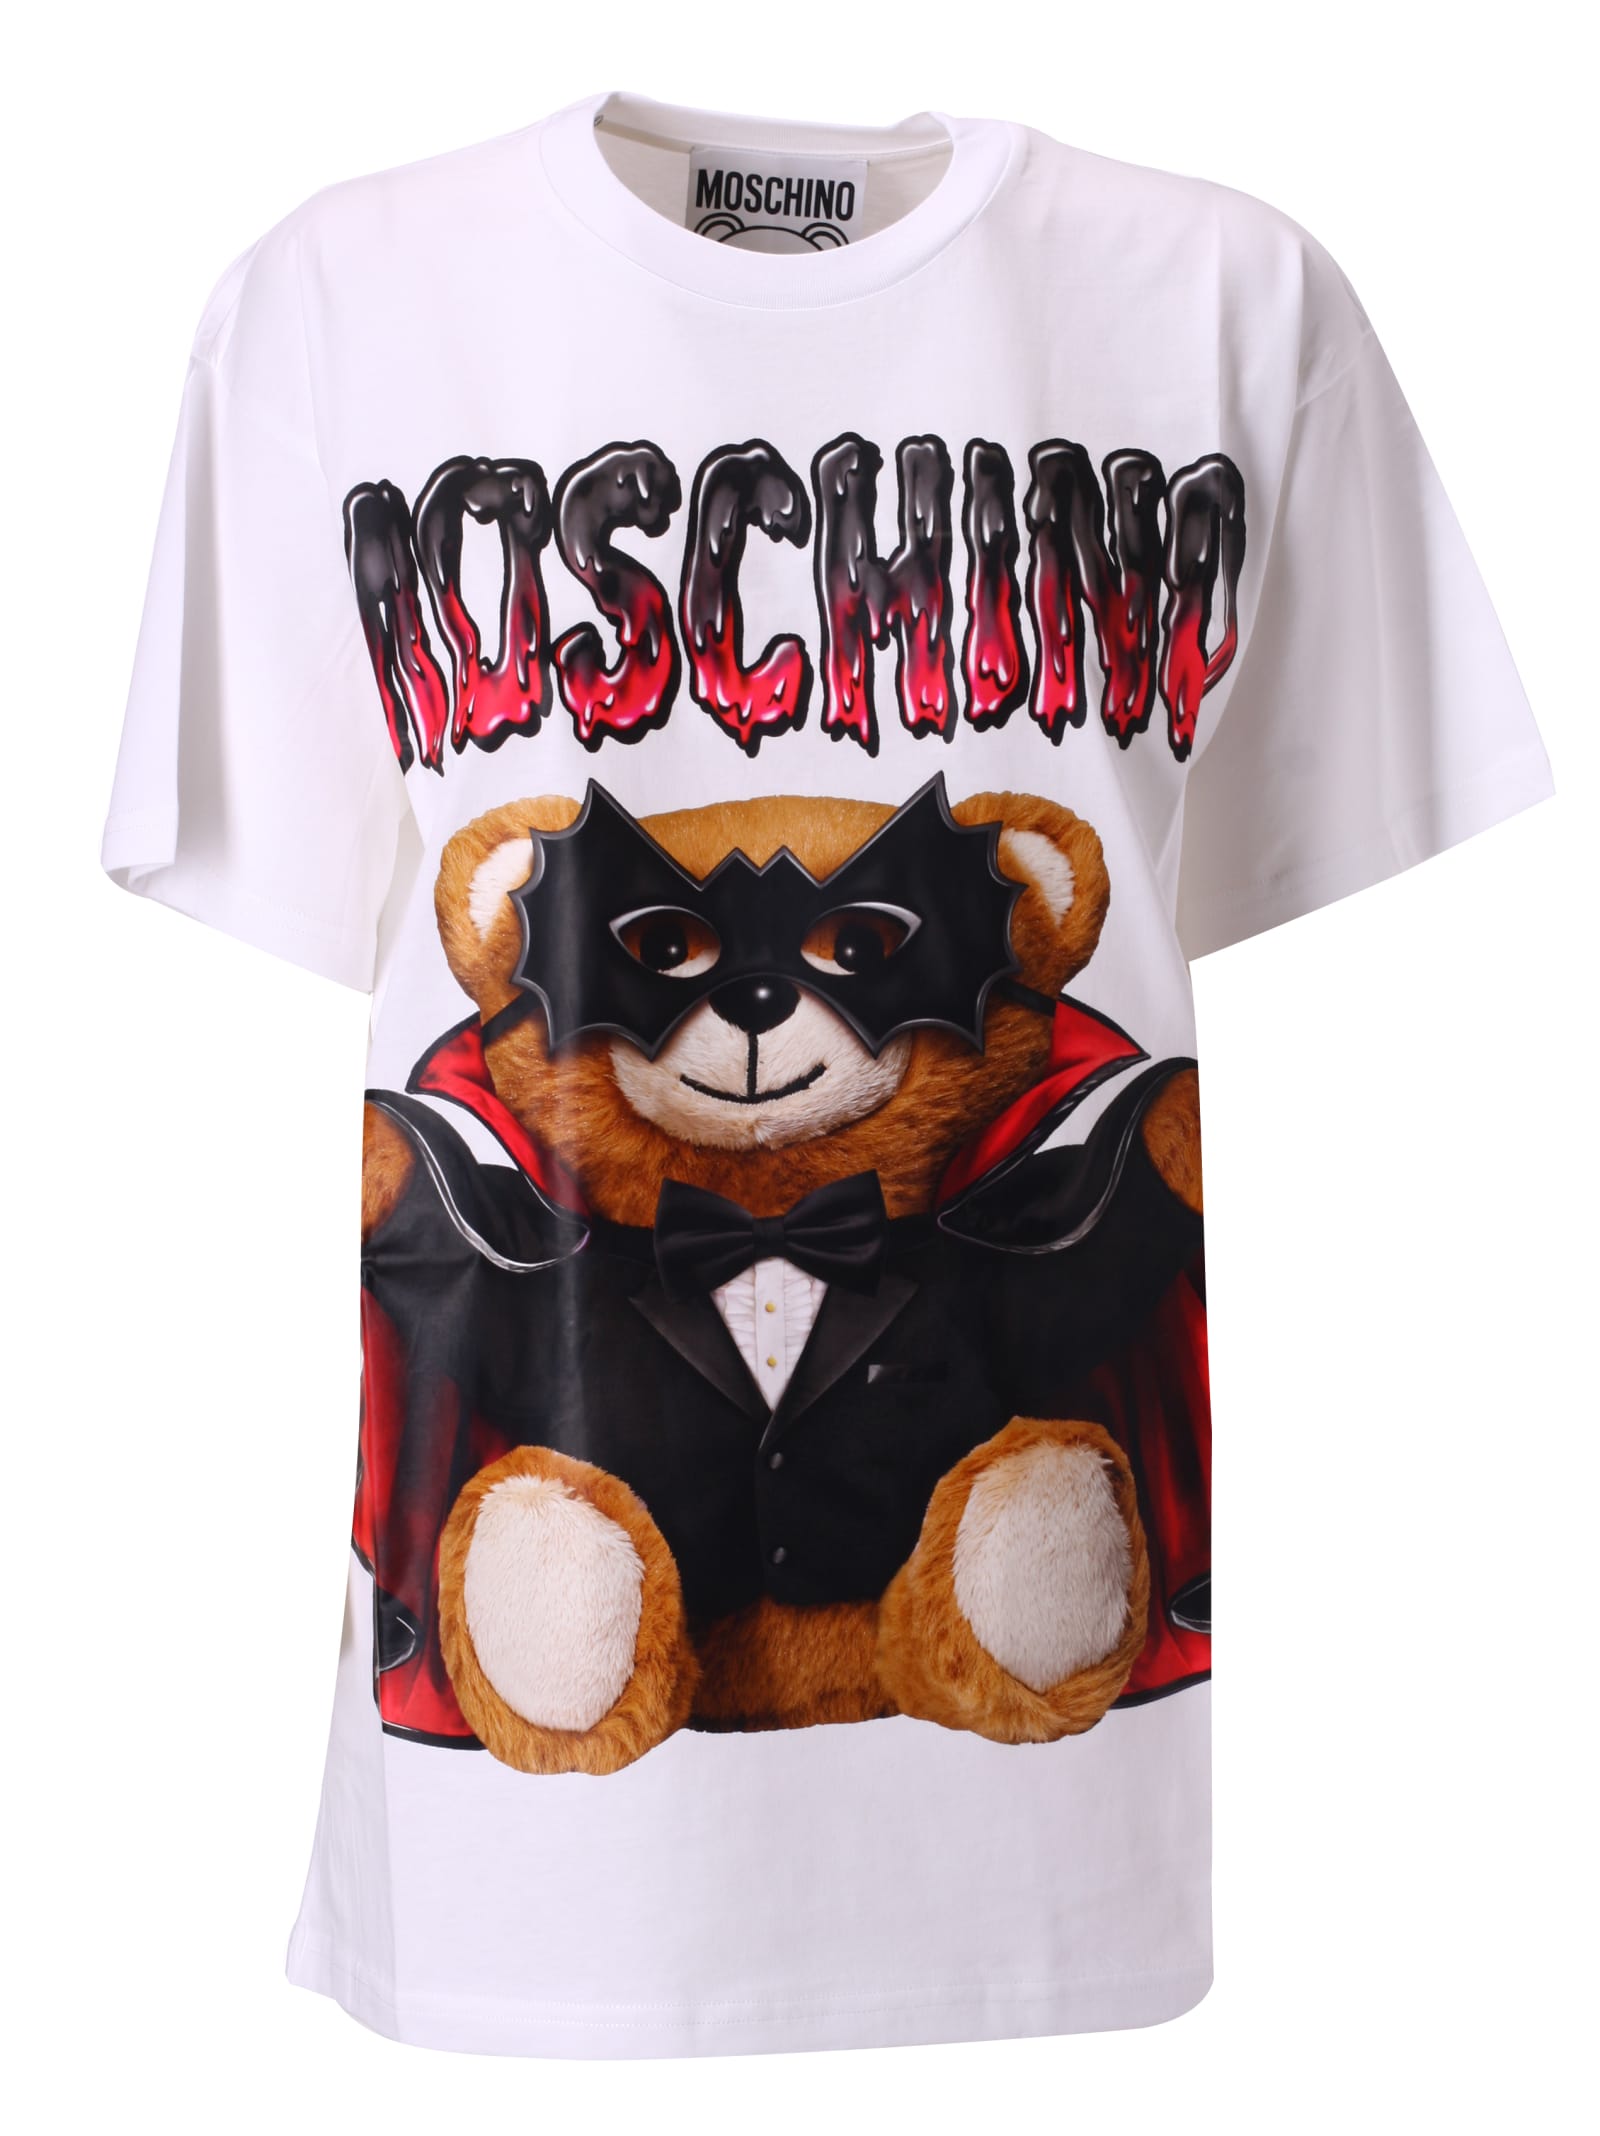 moschino shirt price